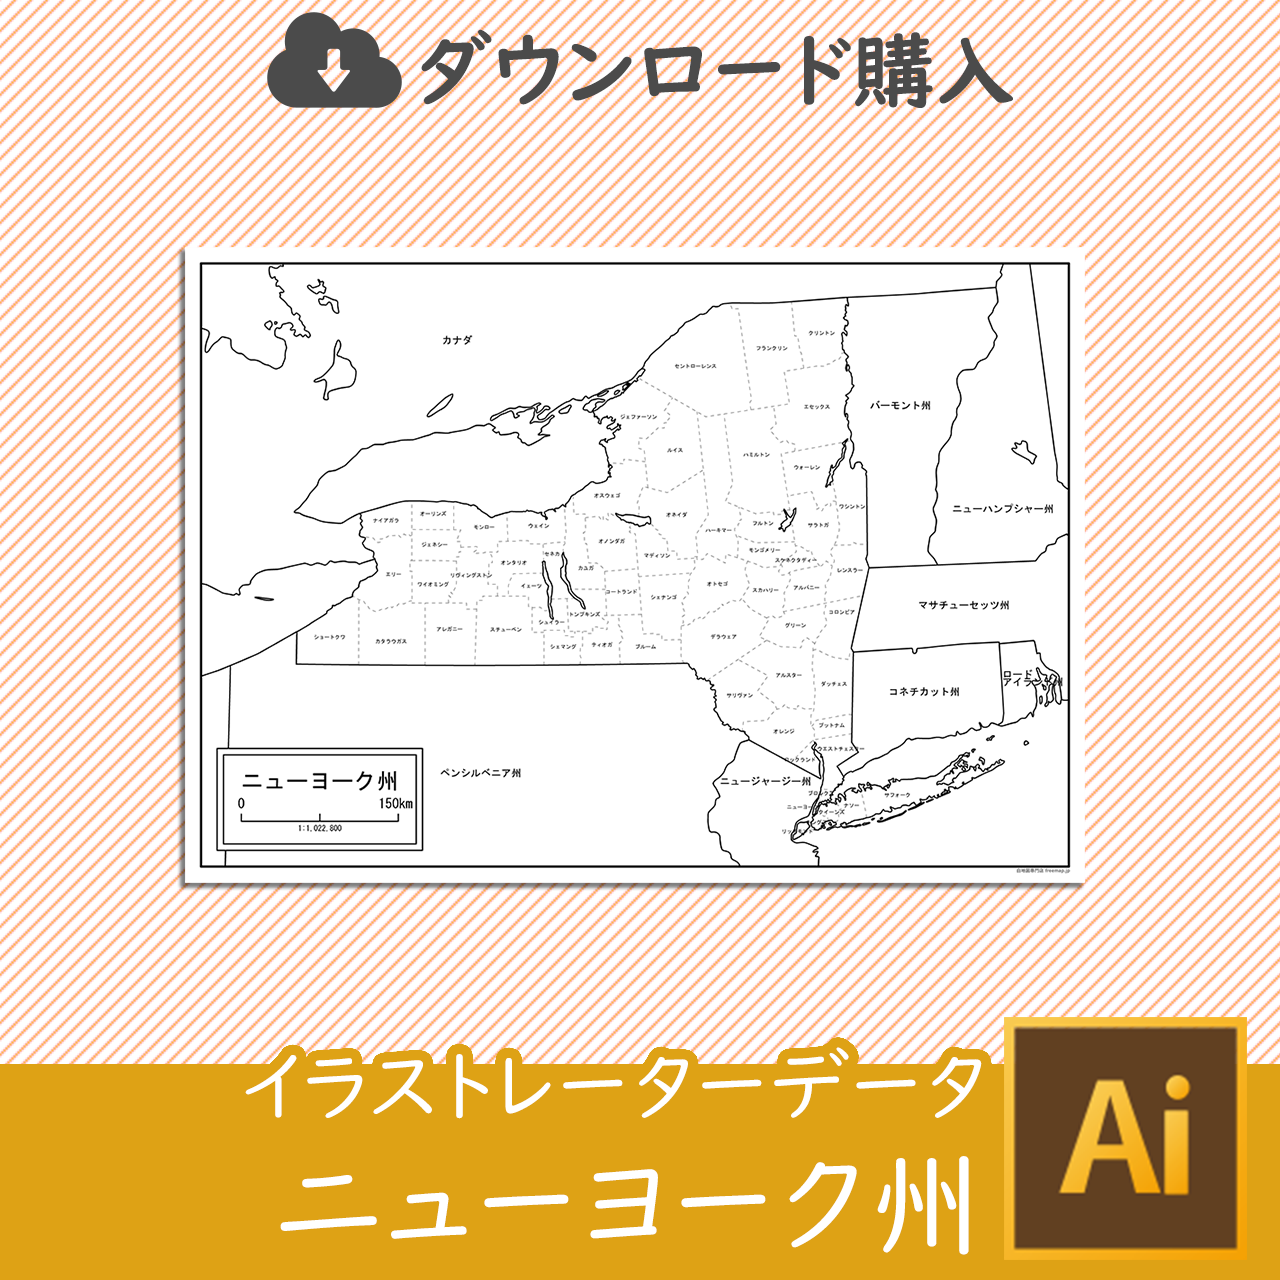 ニューヨーク州の白地図データのサムネイル画像